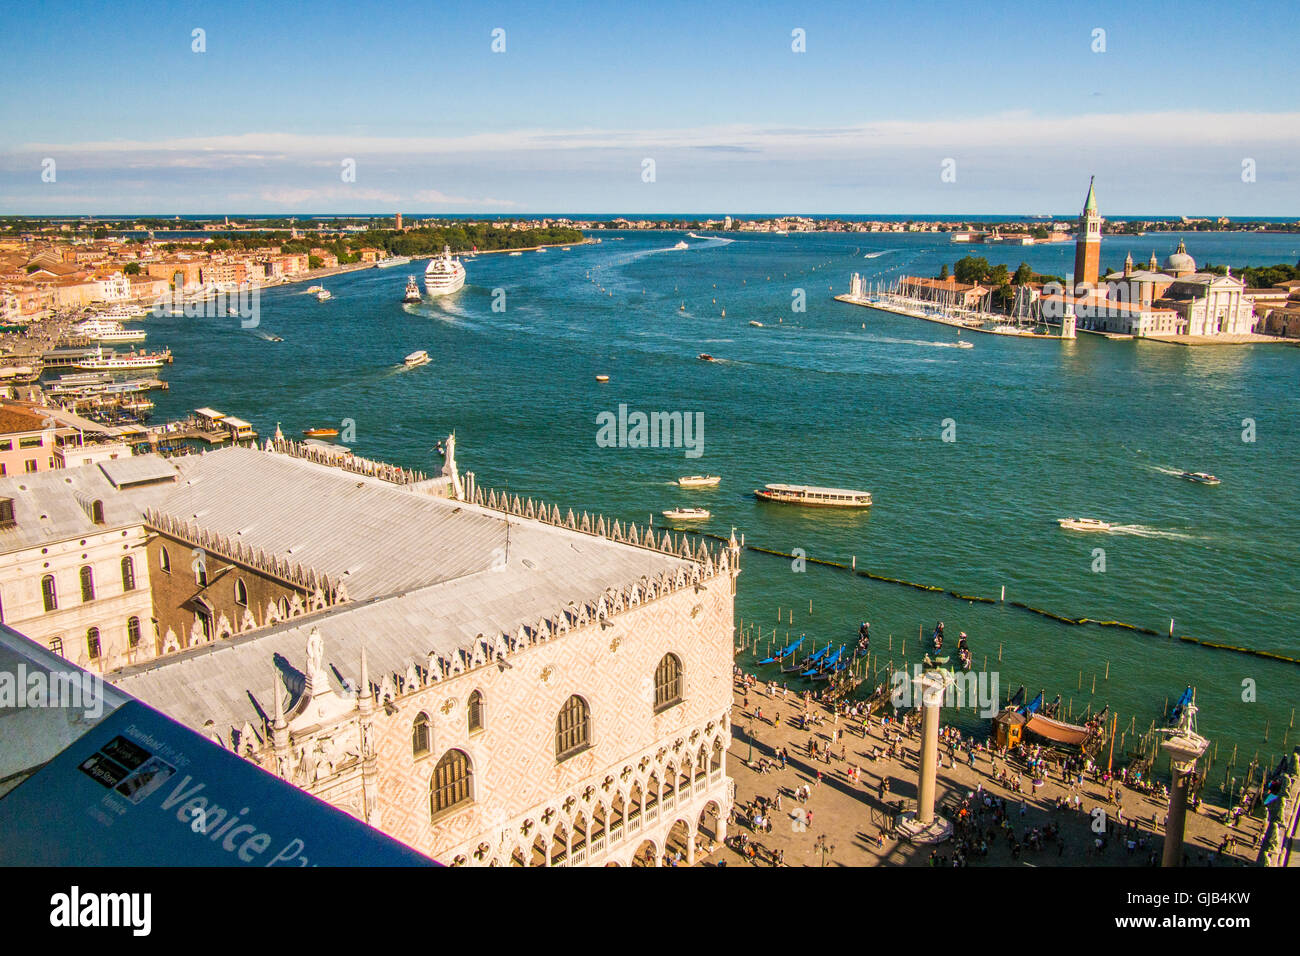 Blick über den Dogen Palast & Piazzetta (Vordergrund), gegenüber der Insel San Giorgio Maggiore, Venedig, Venetien, Italien. Stockfoto